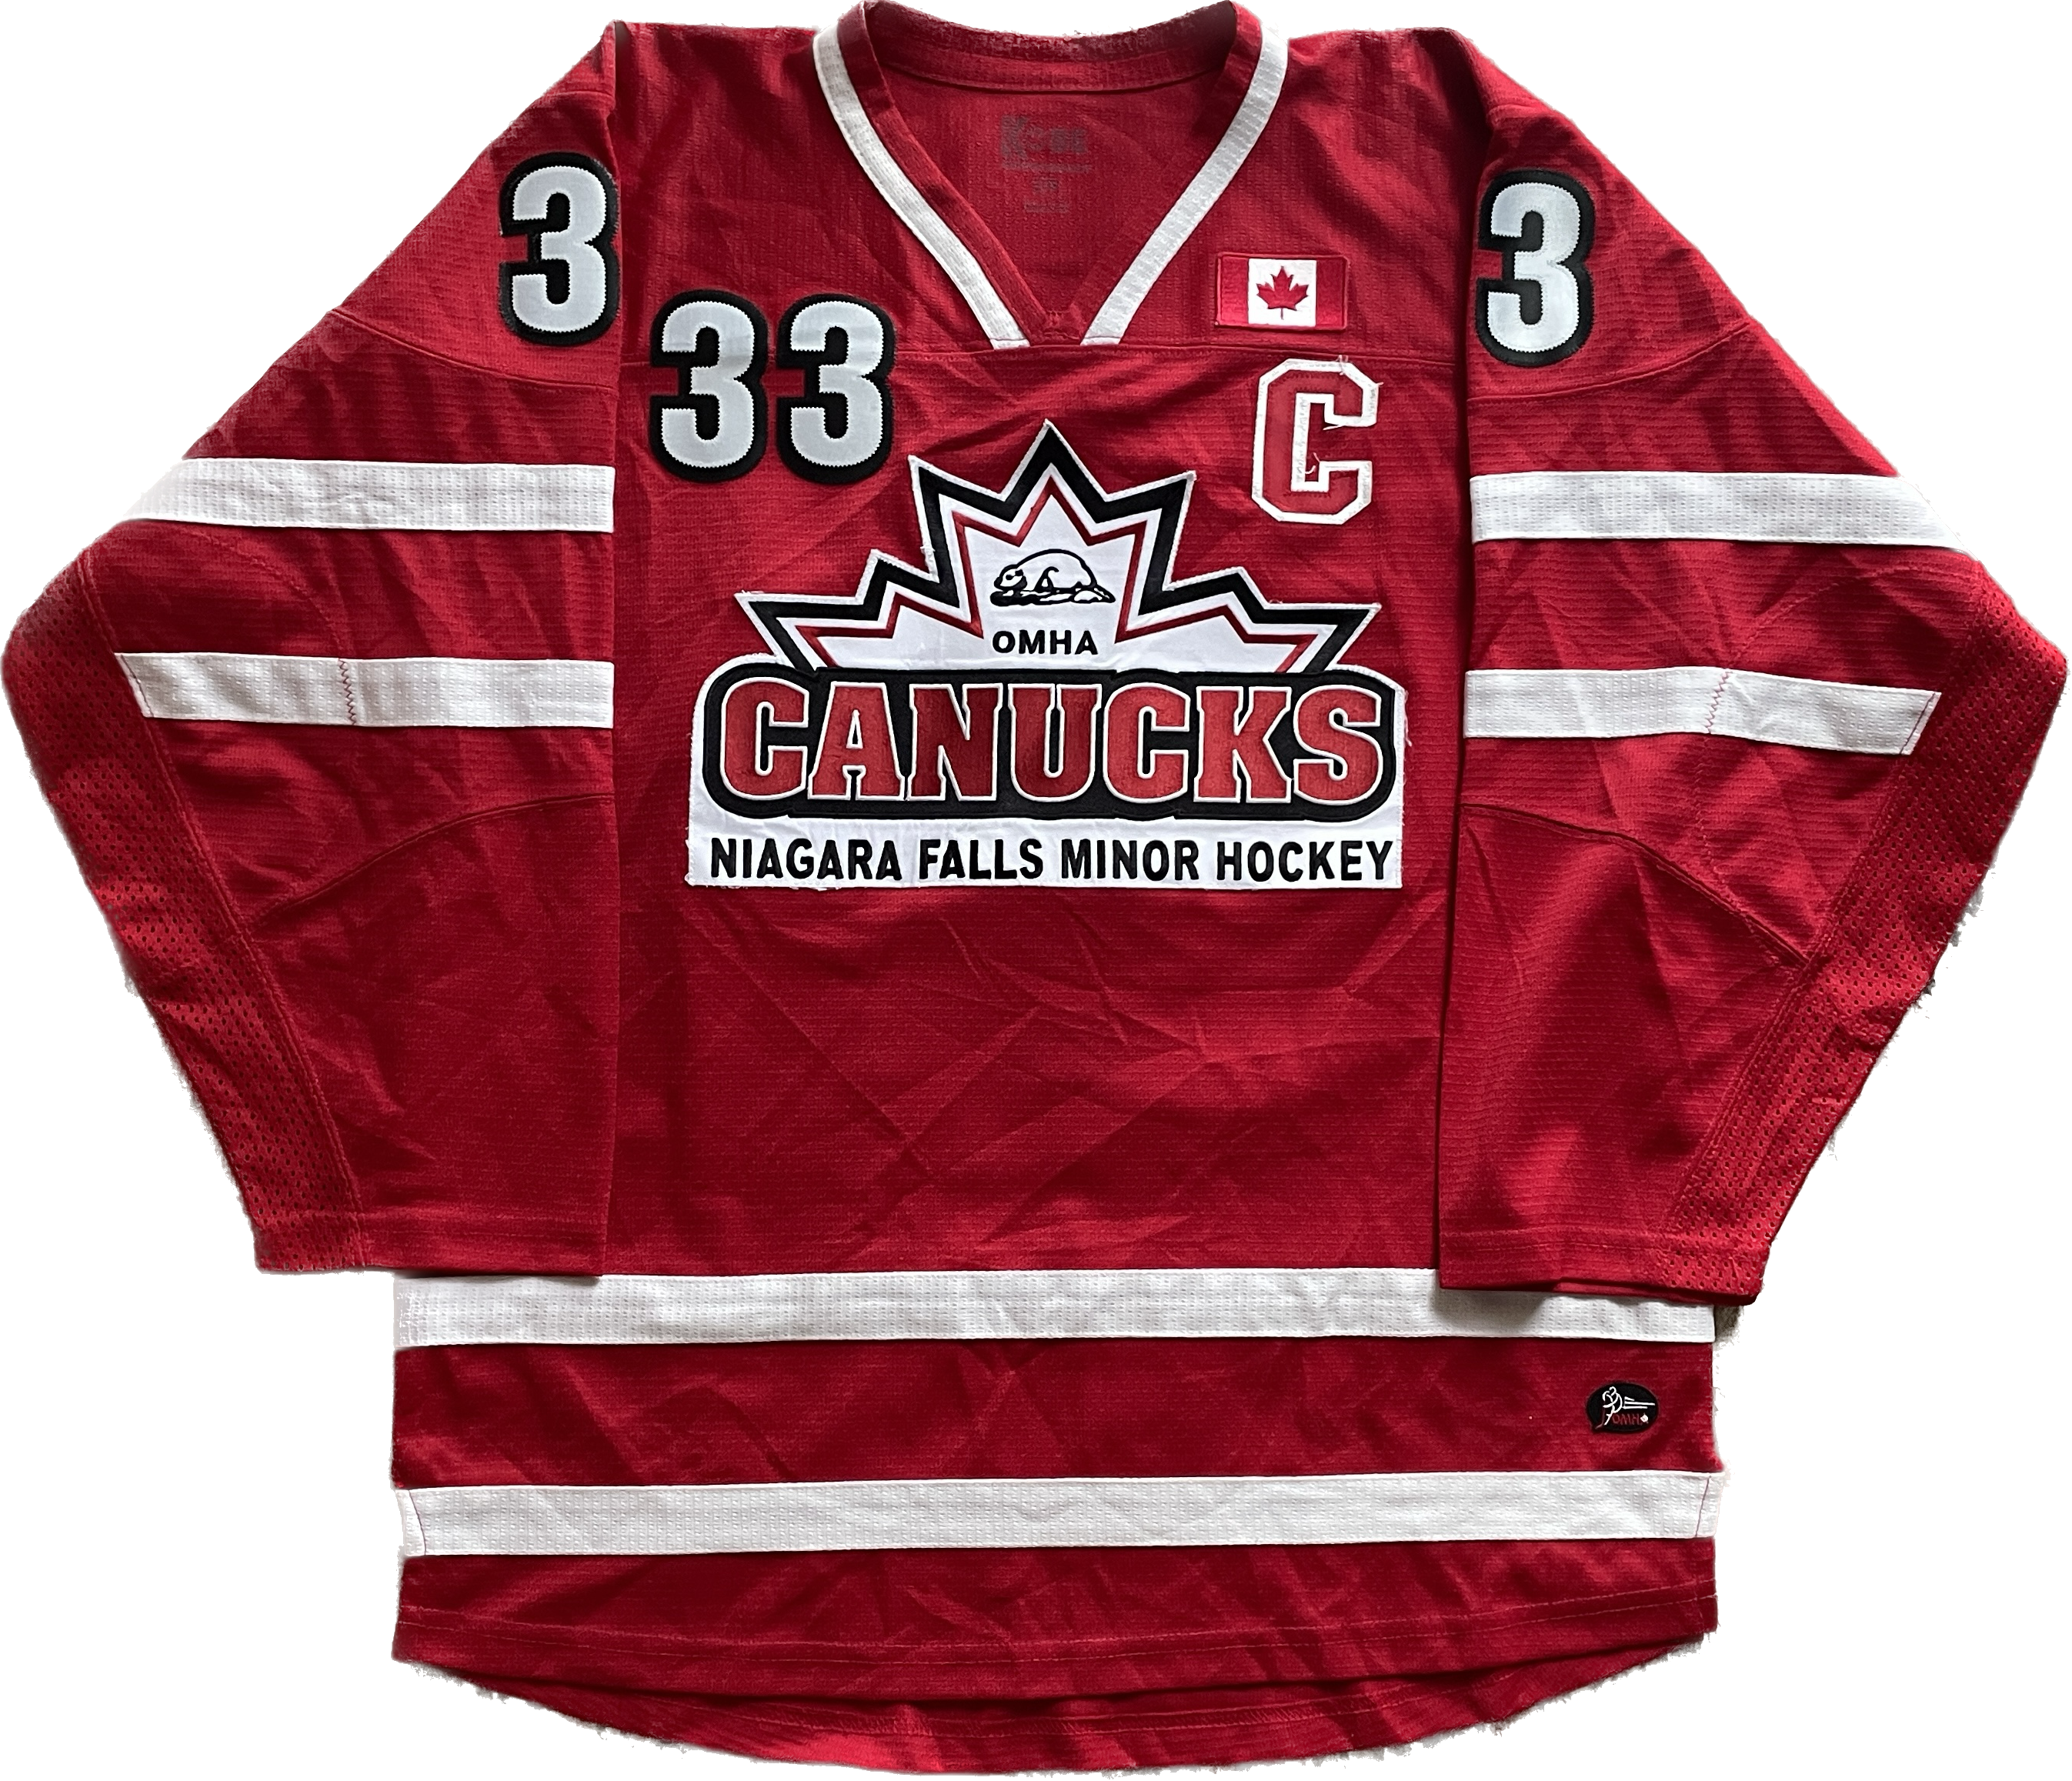 Niagara Falls Canucks OMHA Hockey Jersey (S)